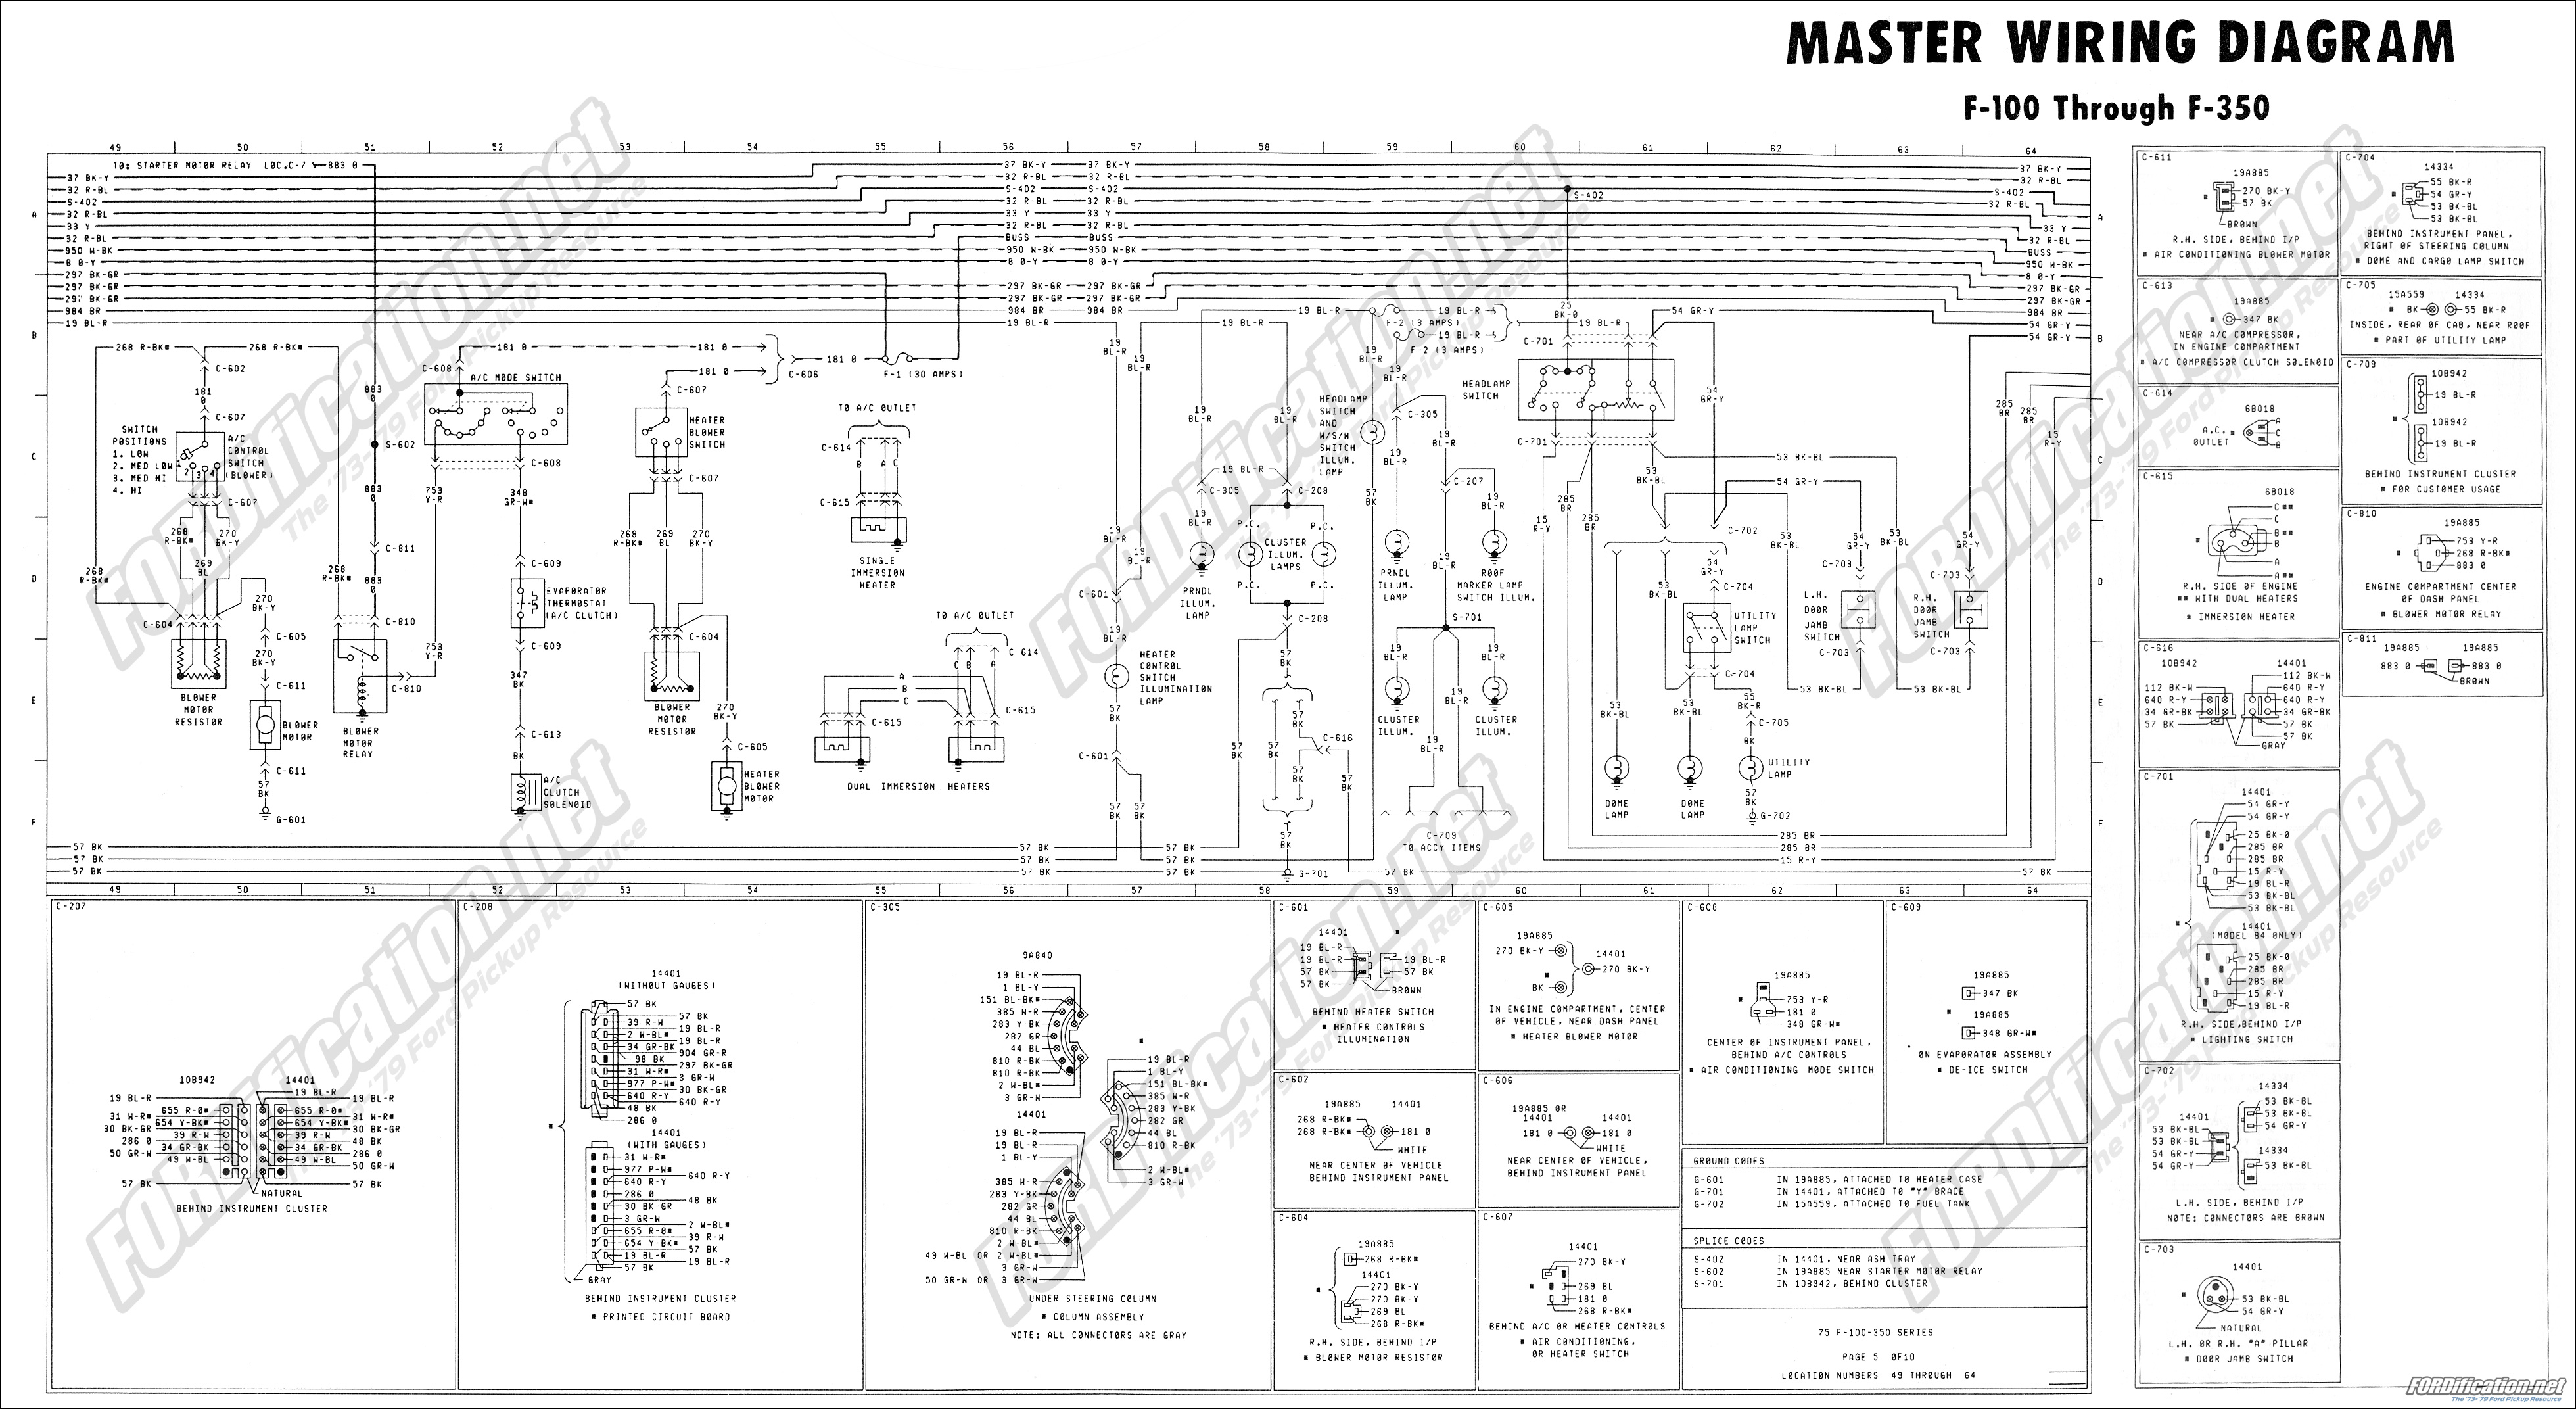 1973-1979 Ford Truck Wiring Diagrams & Schematics - FORDification.net Ford Truck Tail Light Wiring FORDification.net